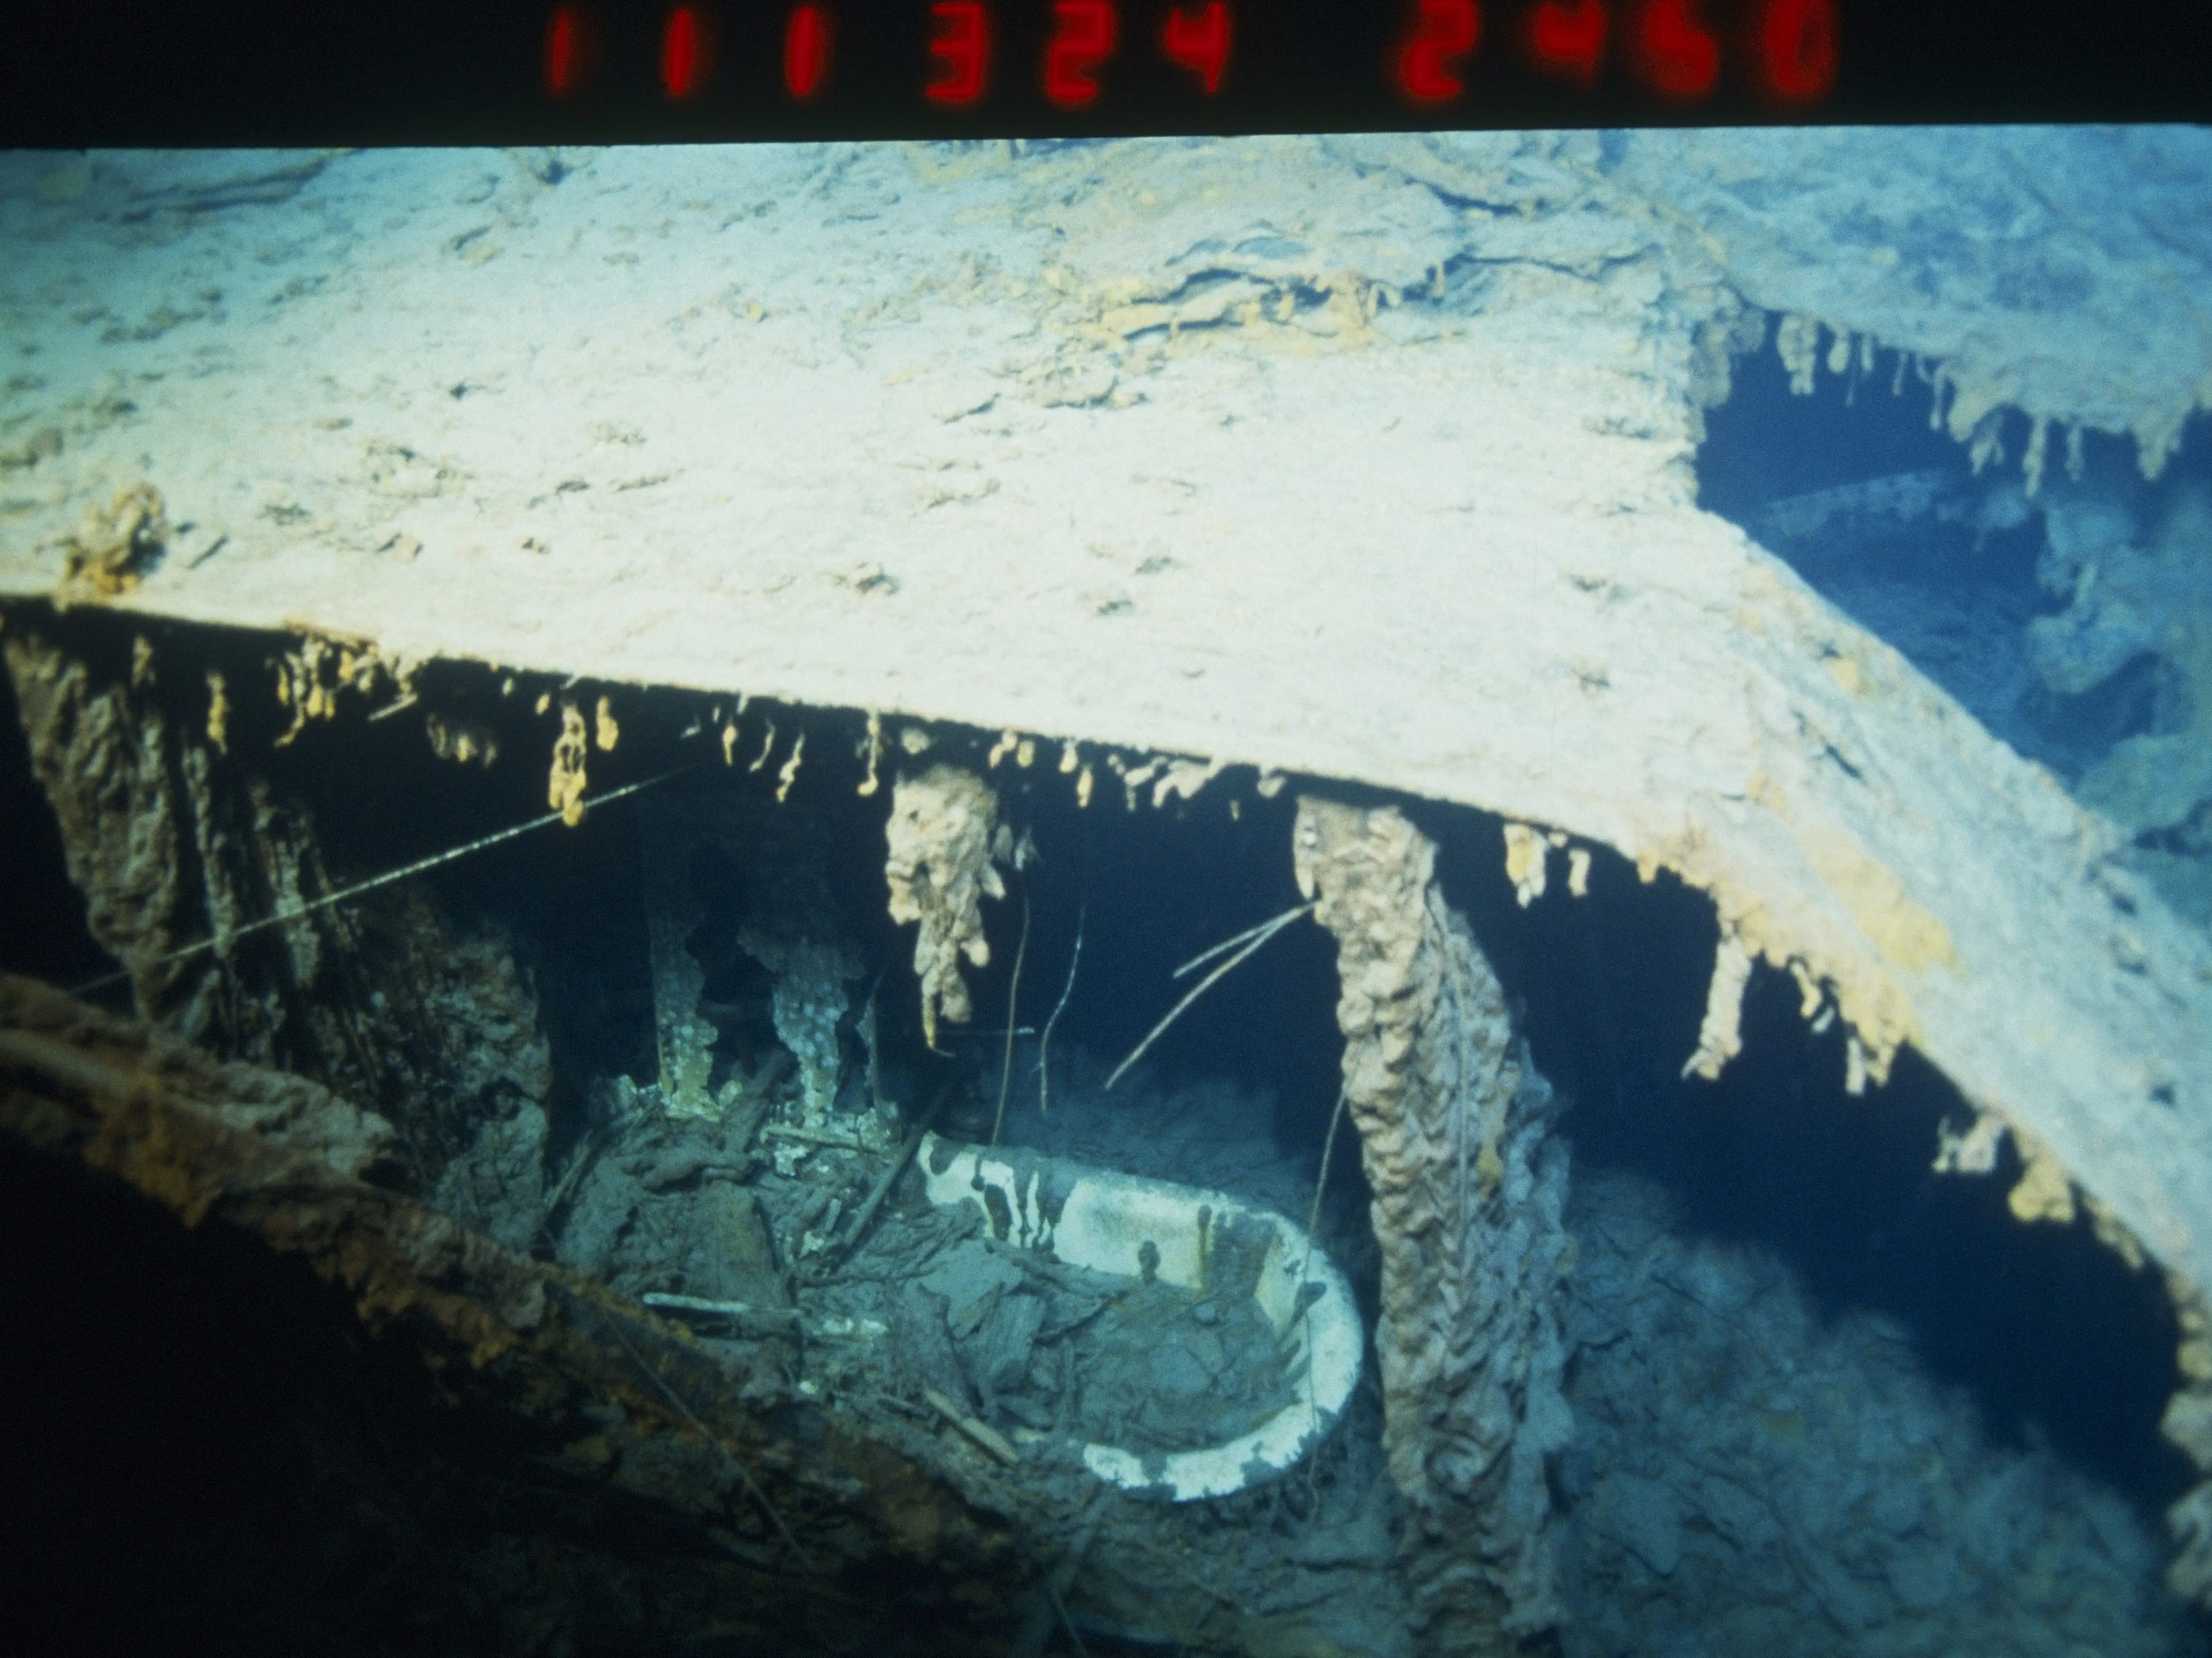 Los restos del Titanic, con una bañera visible, en una foto tomada en 1996.